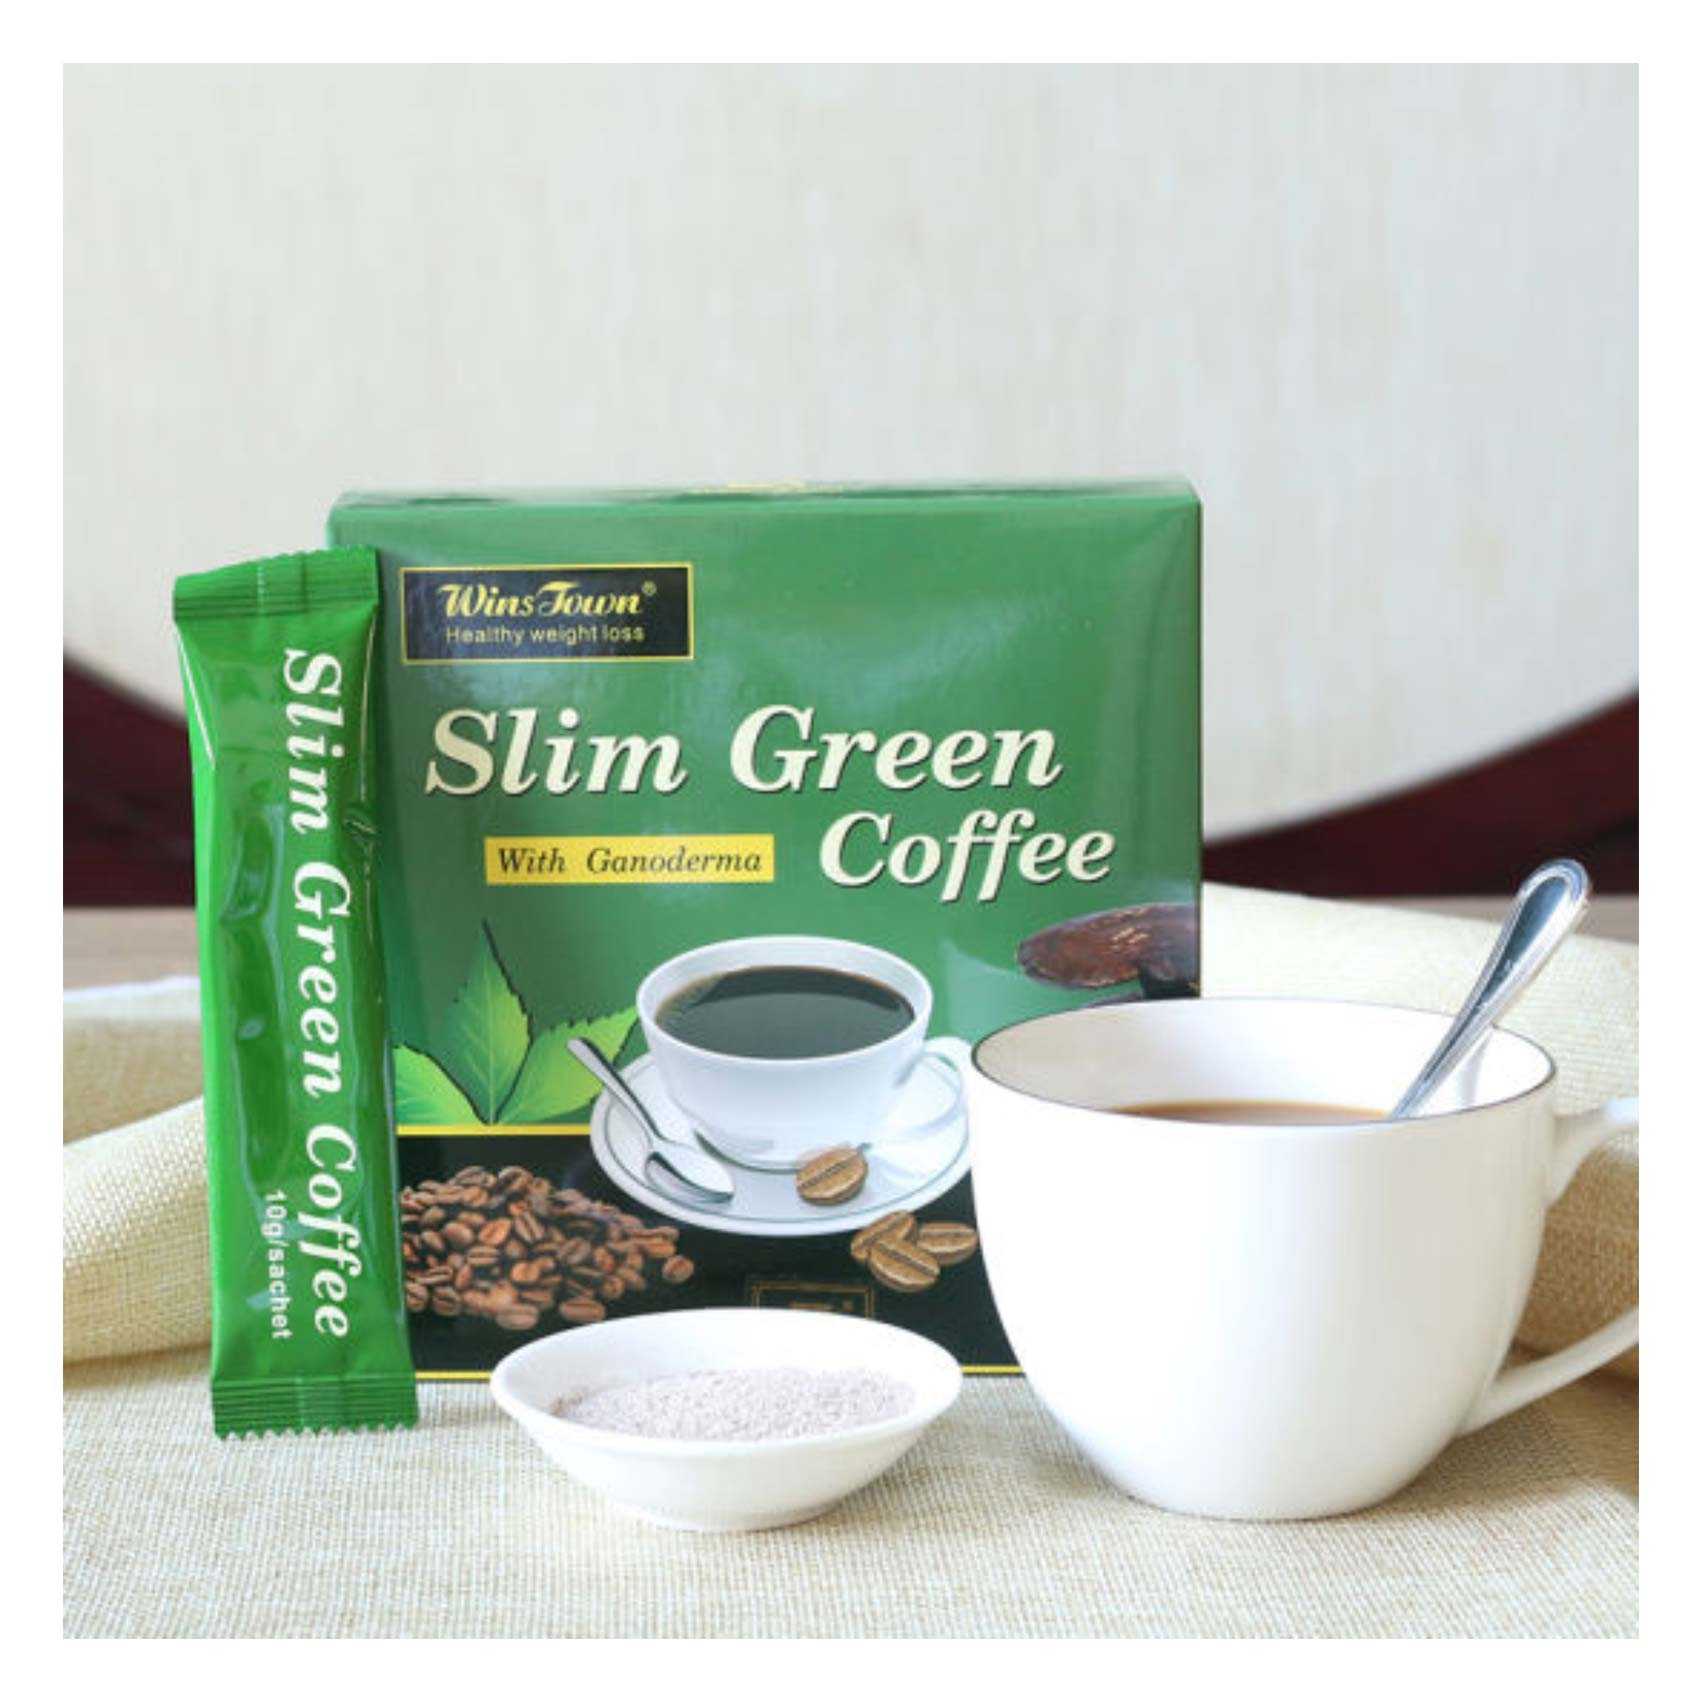 وينز تاون سليم جانوديرما القهوة الخضراء 180 غرام